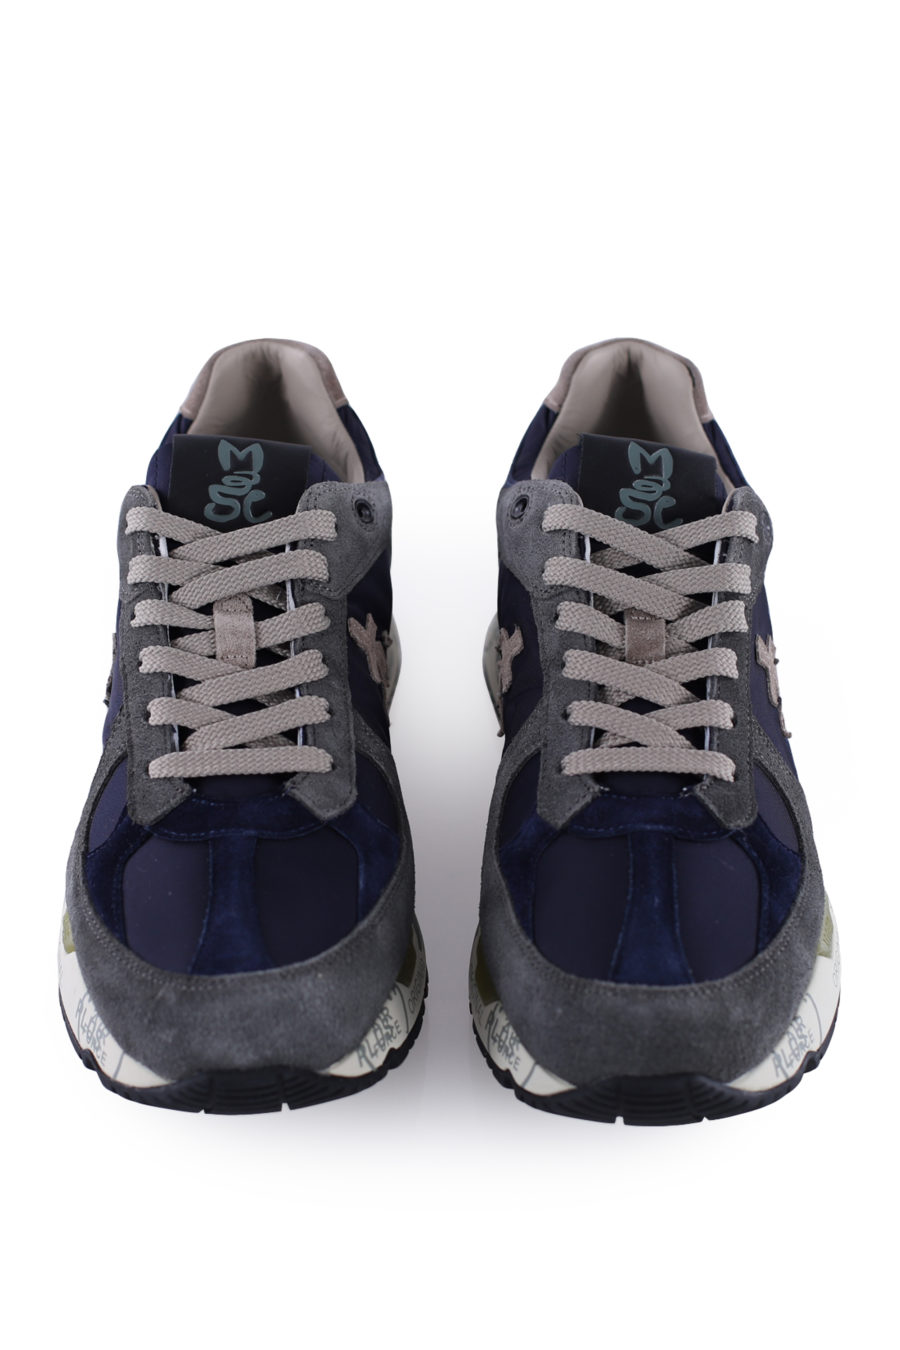 Zapatillas "Mase" color azul y gris - IMG 9986